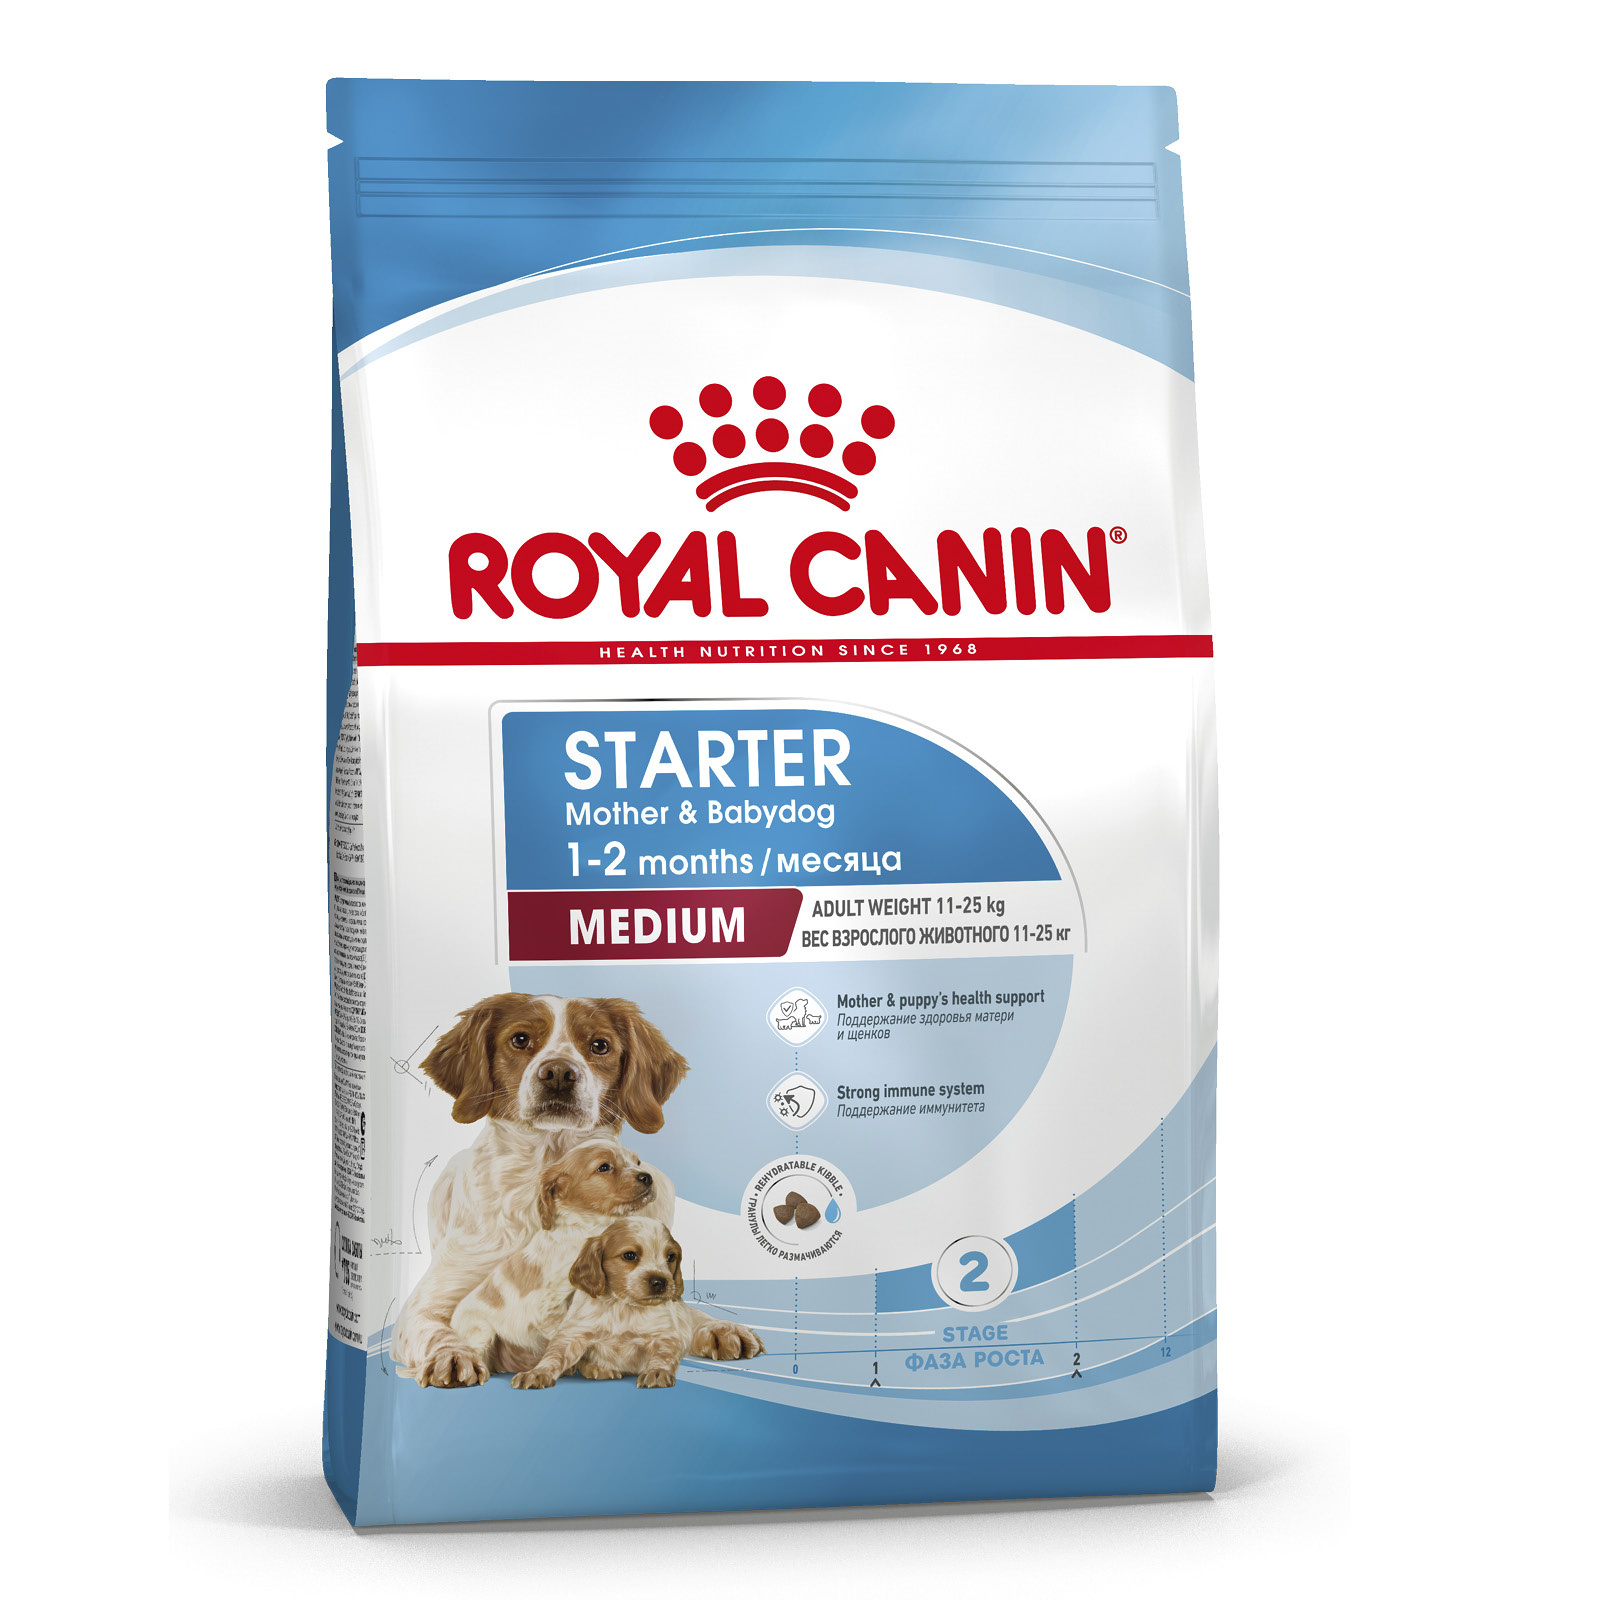 Royal Canin Корм Royal Canin для щенков средних пород от 3 недель до 2 месяцев, беременных и кормящих сук (12 кг) royal canin корм royal canin для щенков средних пород от 3 недель до 2 месяцев беременных и кормящих сук 12 кг